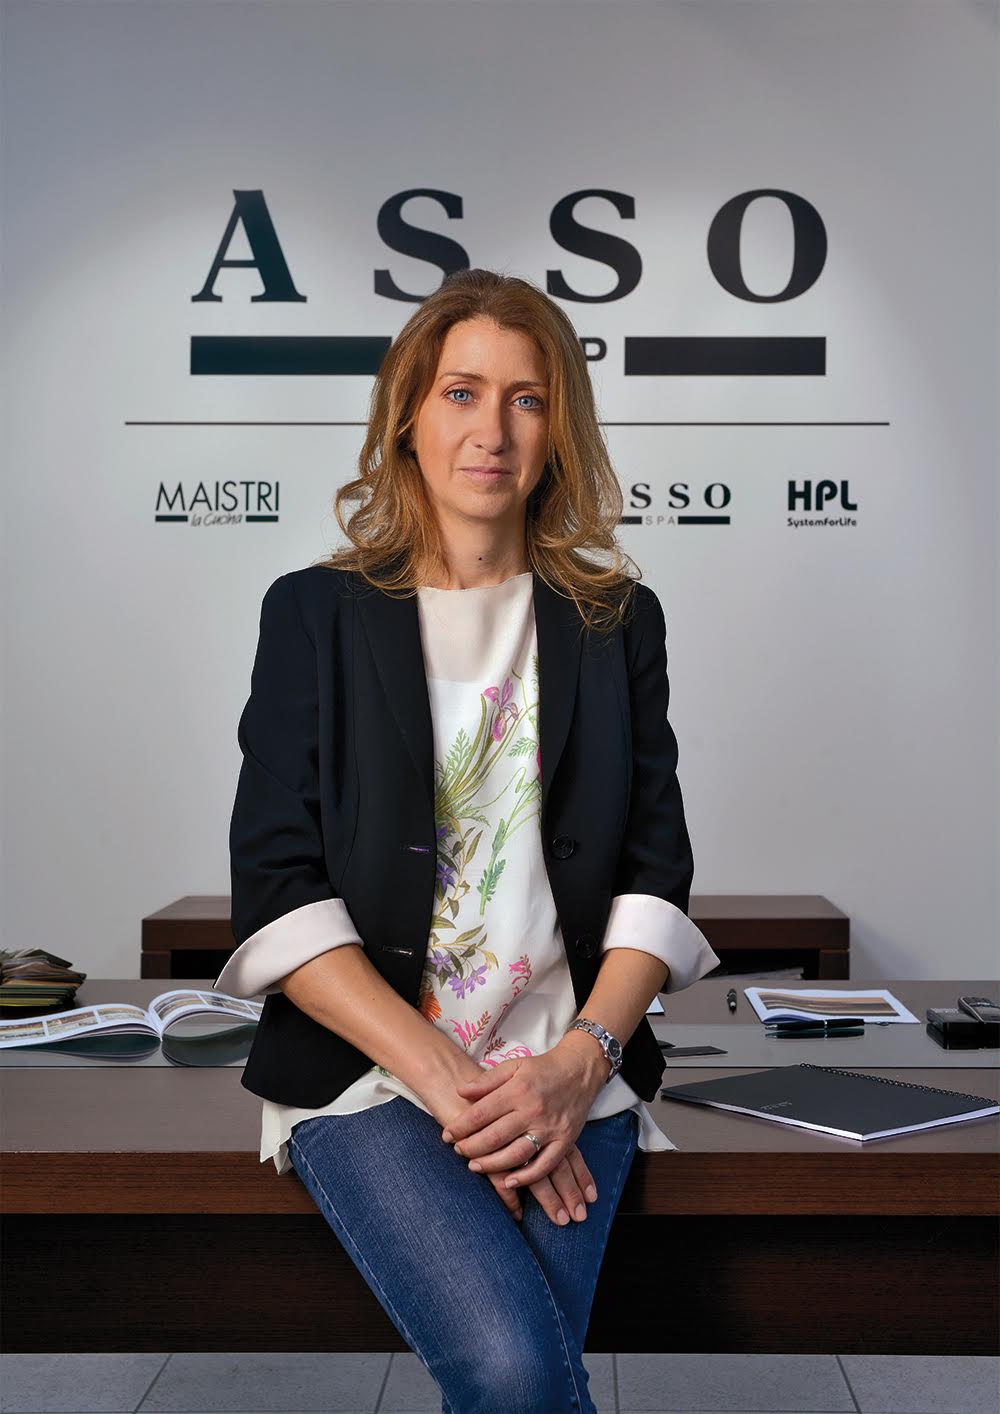 Fuorisalone 2017: l’intervista a Monica Venturini, Responsabile Marketing del Gruppo Asso